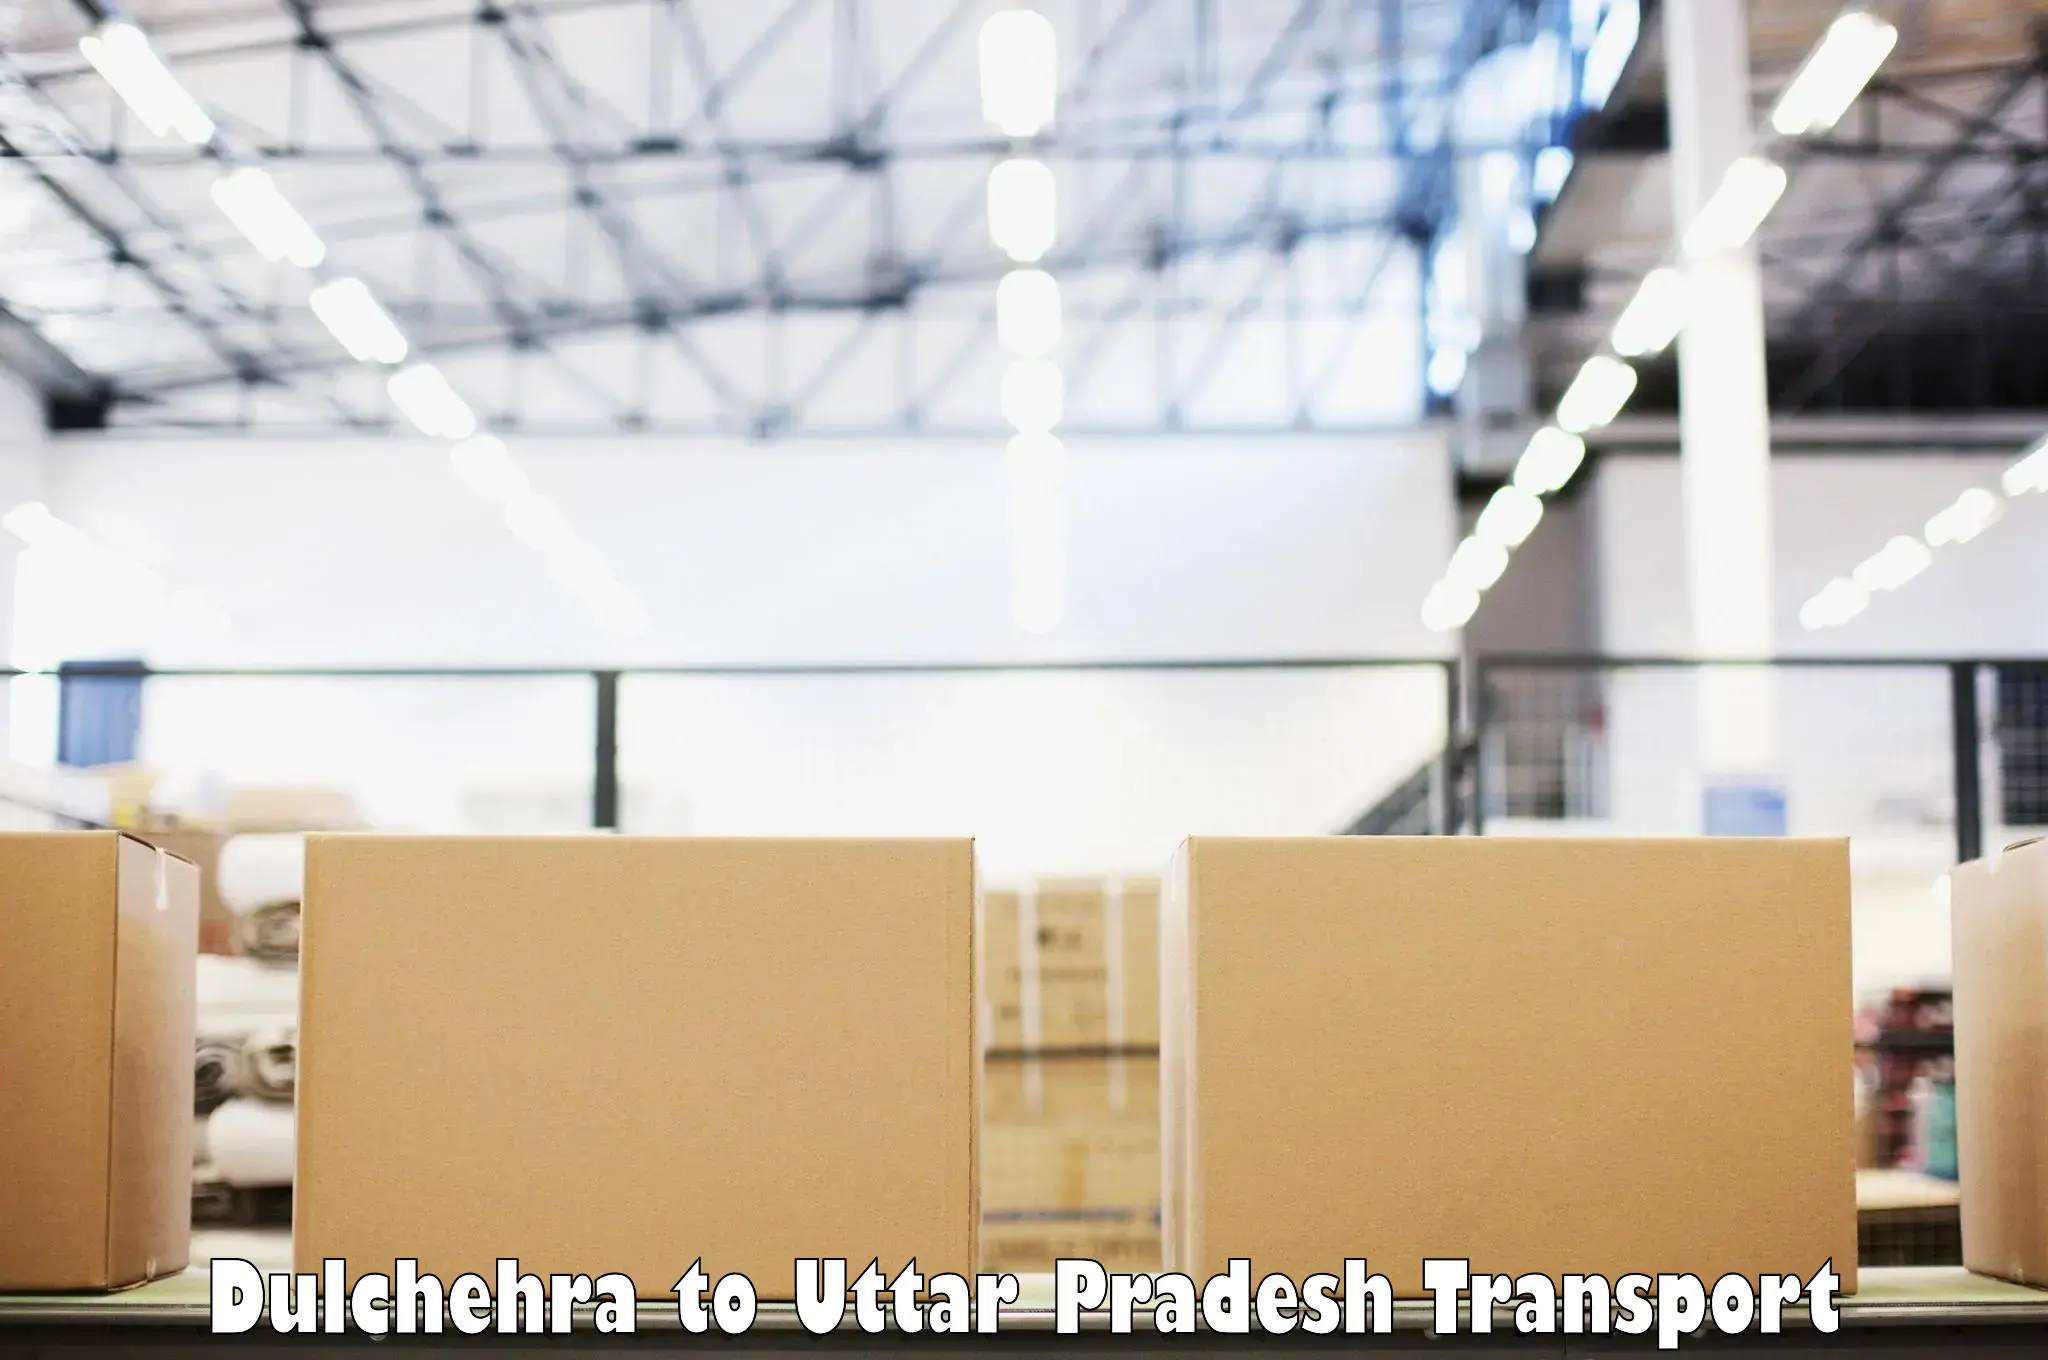 Nationwide transport services Dulchehra to Shankargarh